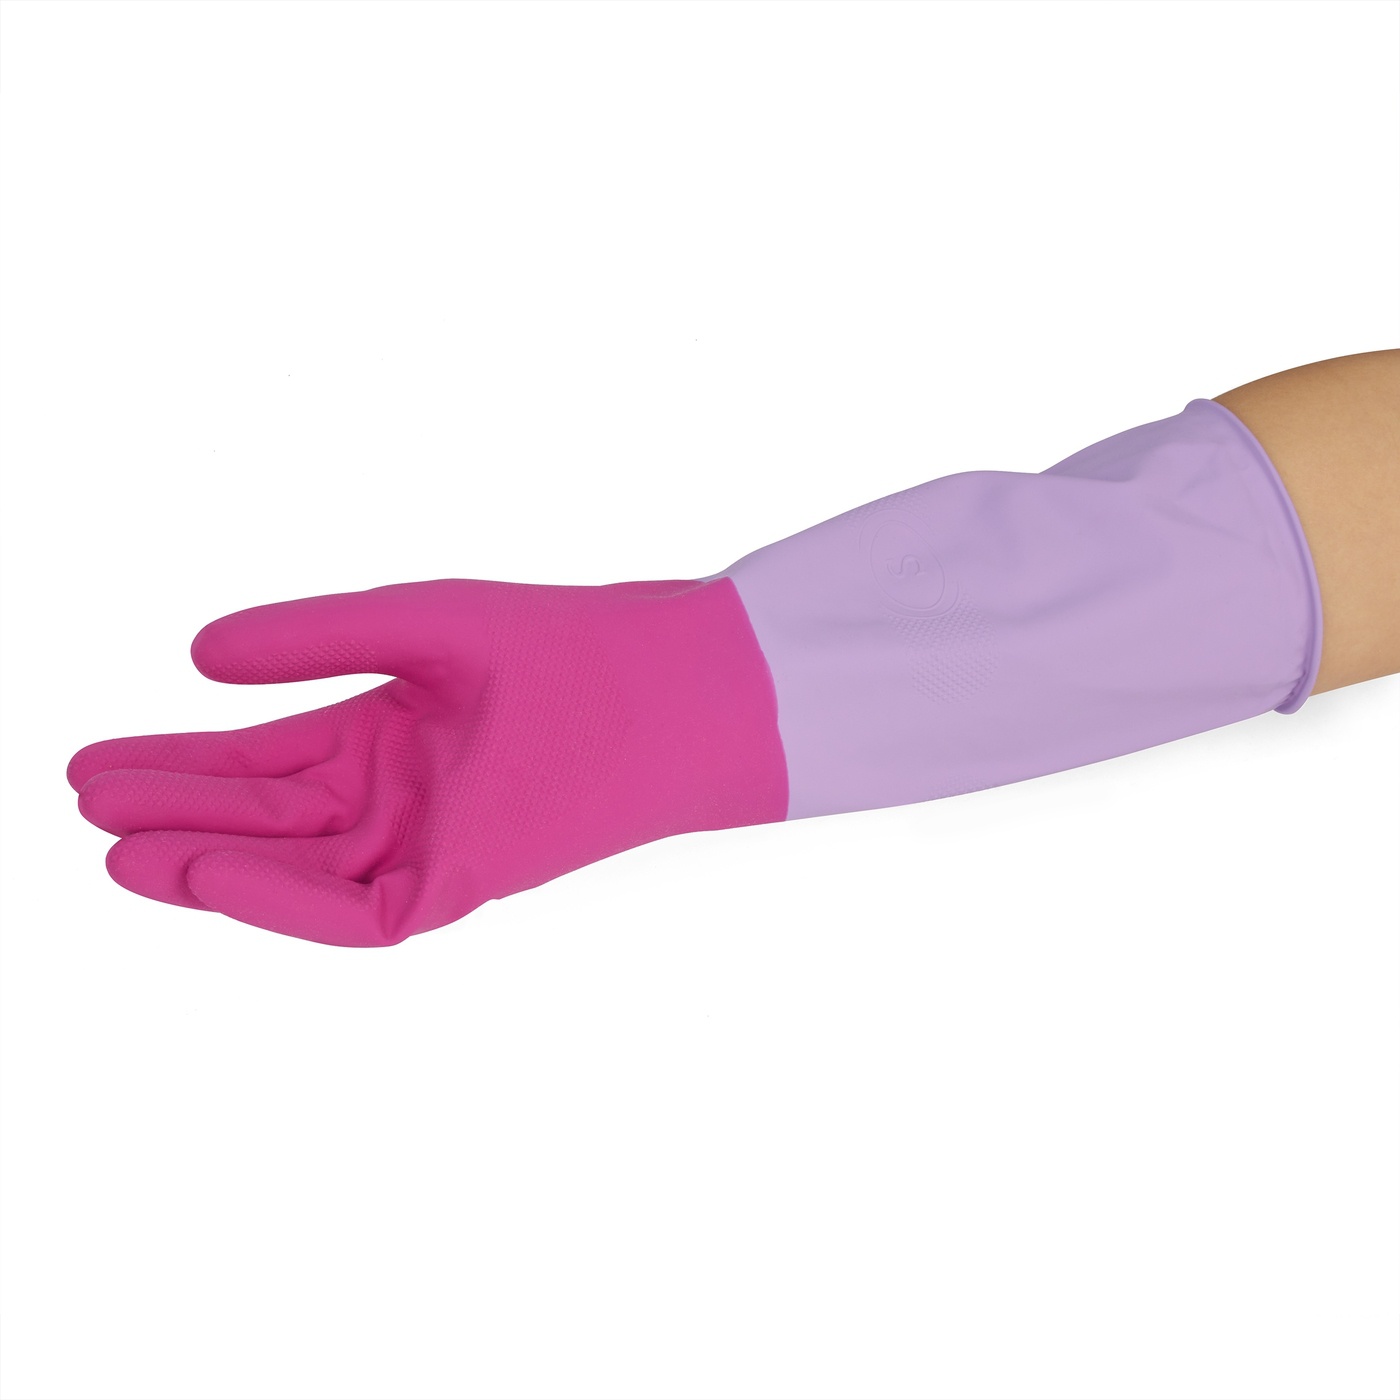 Voňavé gumené rukavice York Rosie veľkosť M